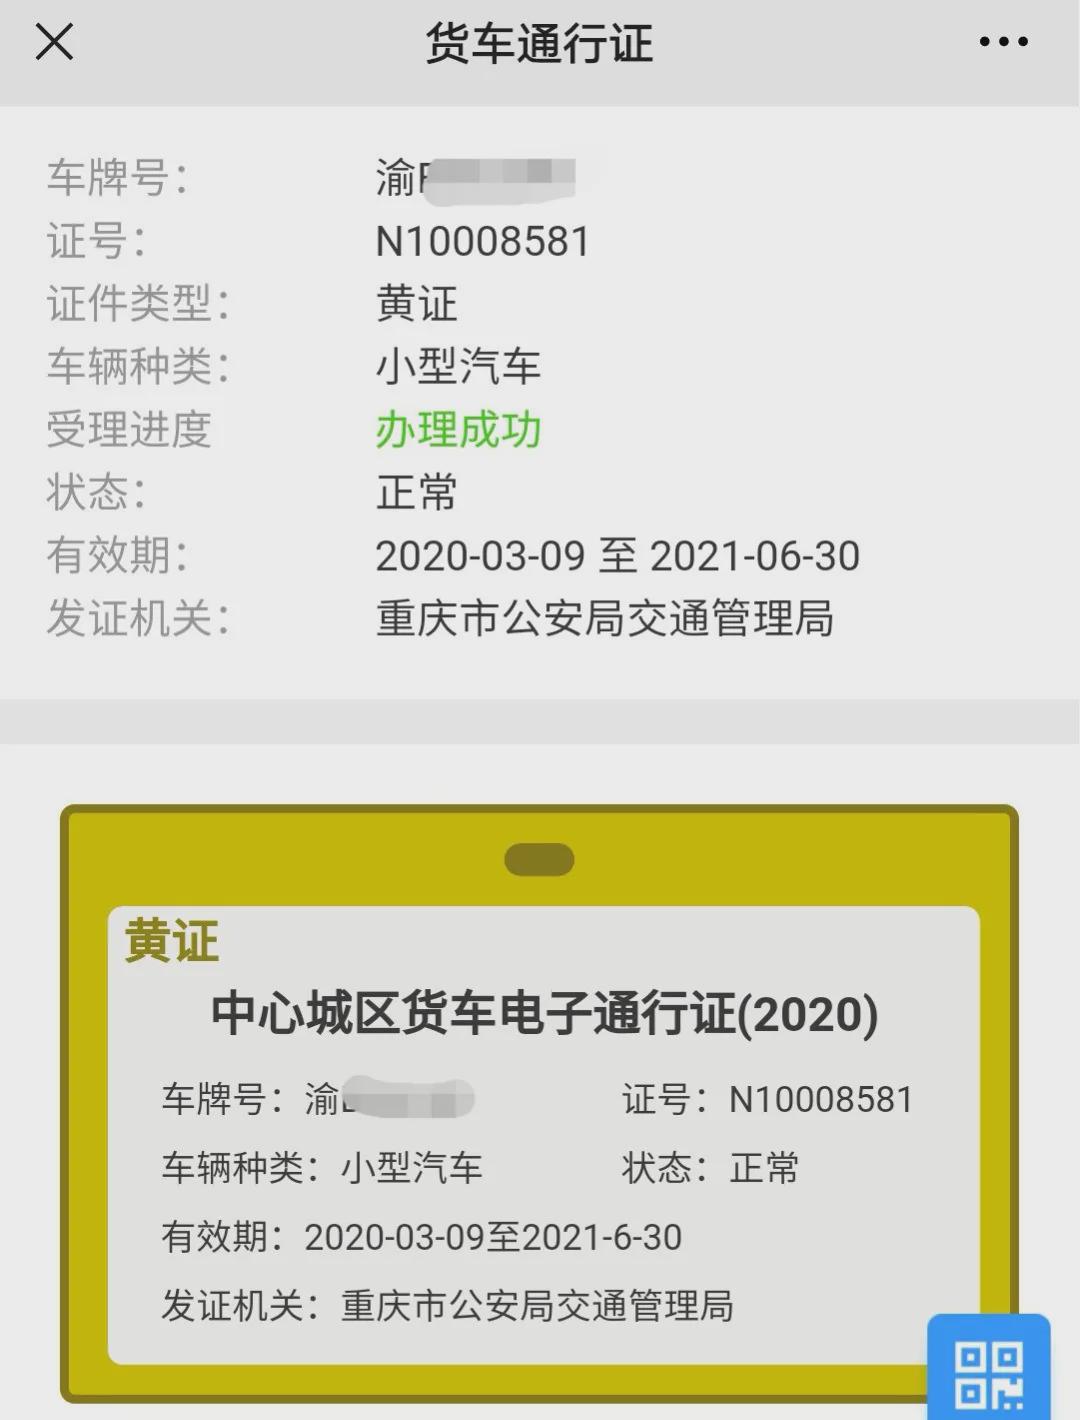 【权威发布】重庆中心城区货车通行证网上办理操作手册